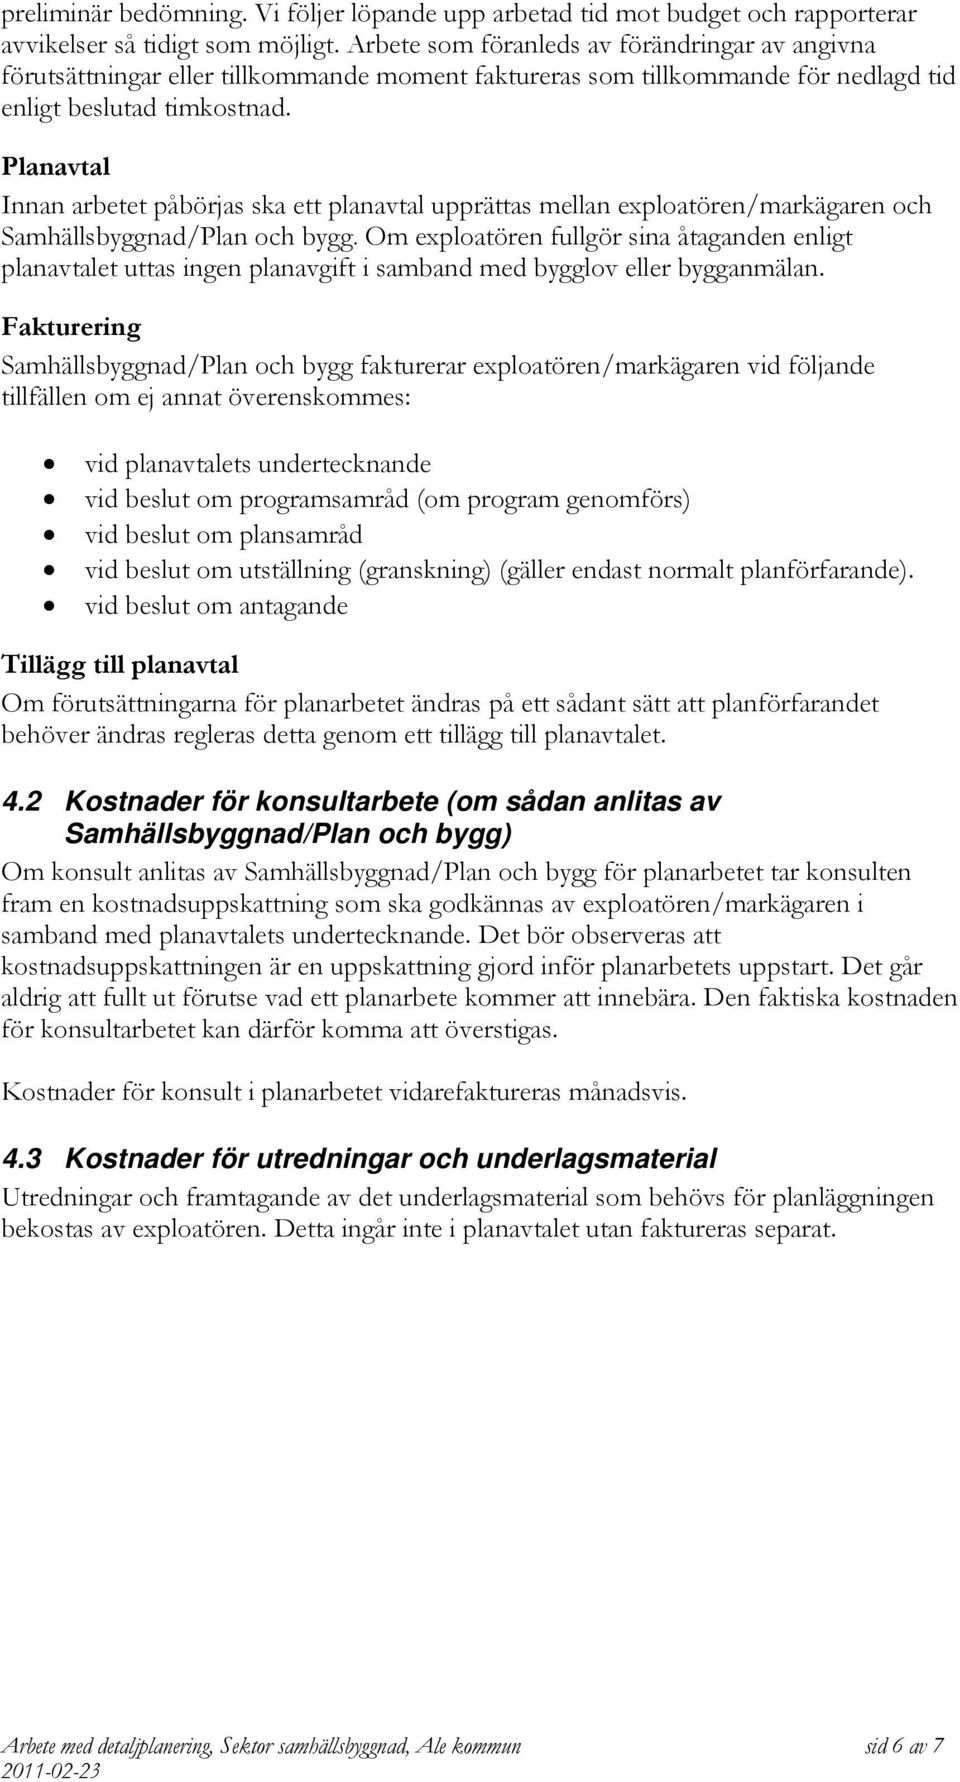 Planavtal Innan arbetet påbörjas ska ett planavtal upprättas mellan exploatören/markägaren och Samhällsbyggnad/Plan och bygg.